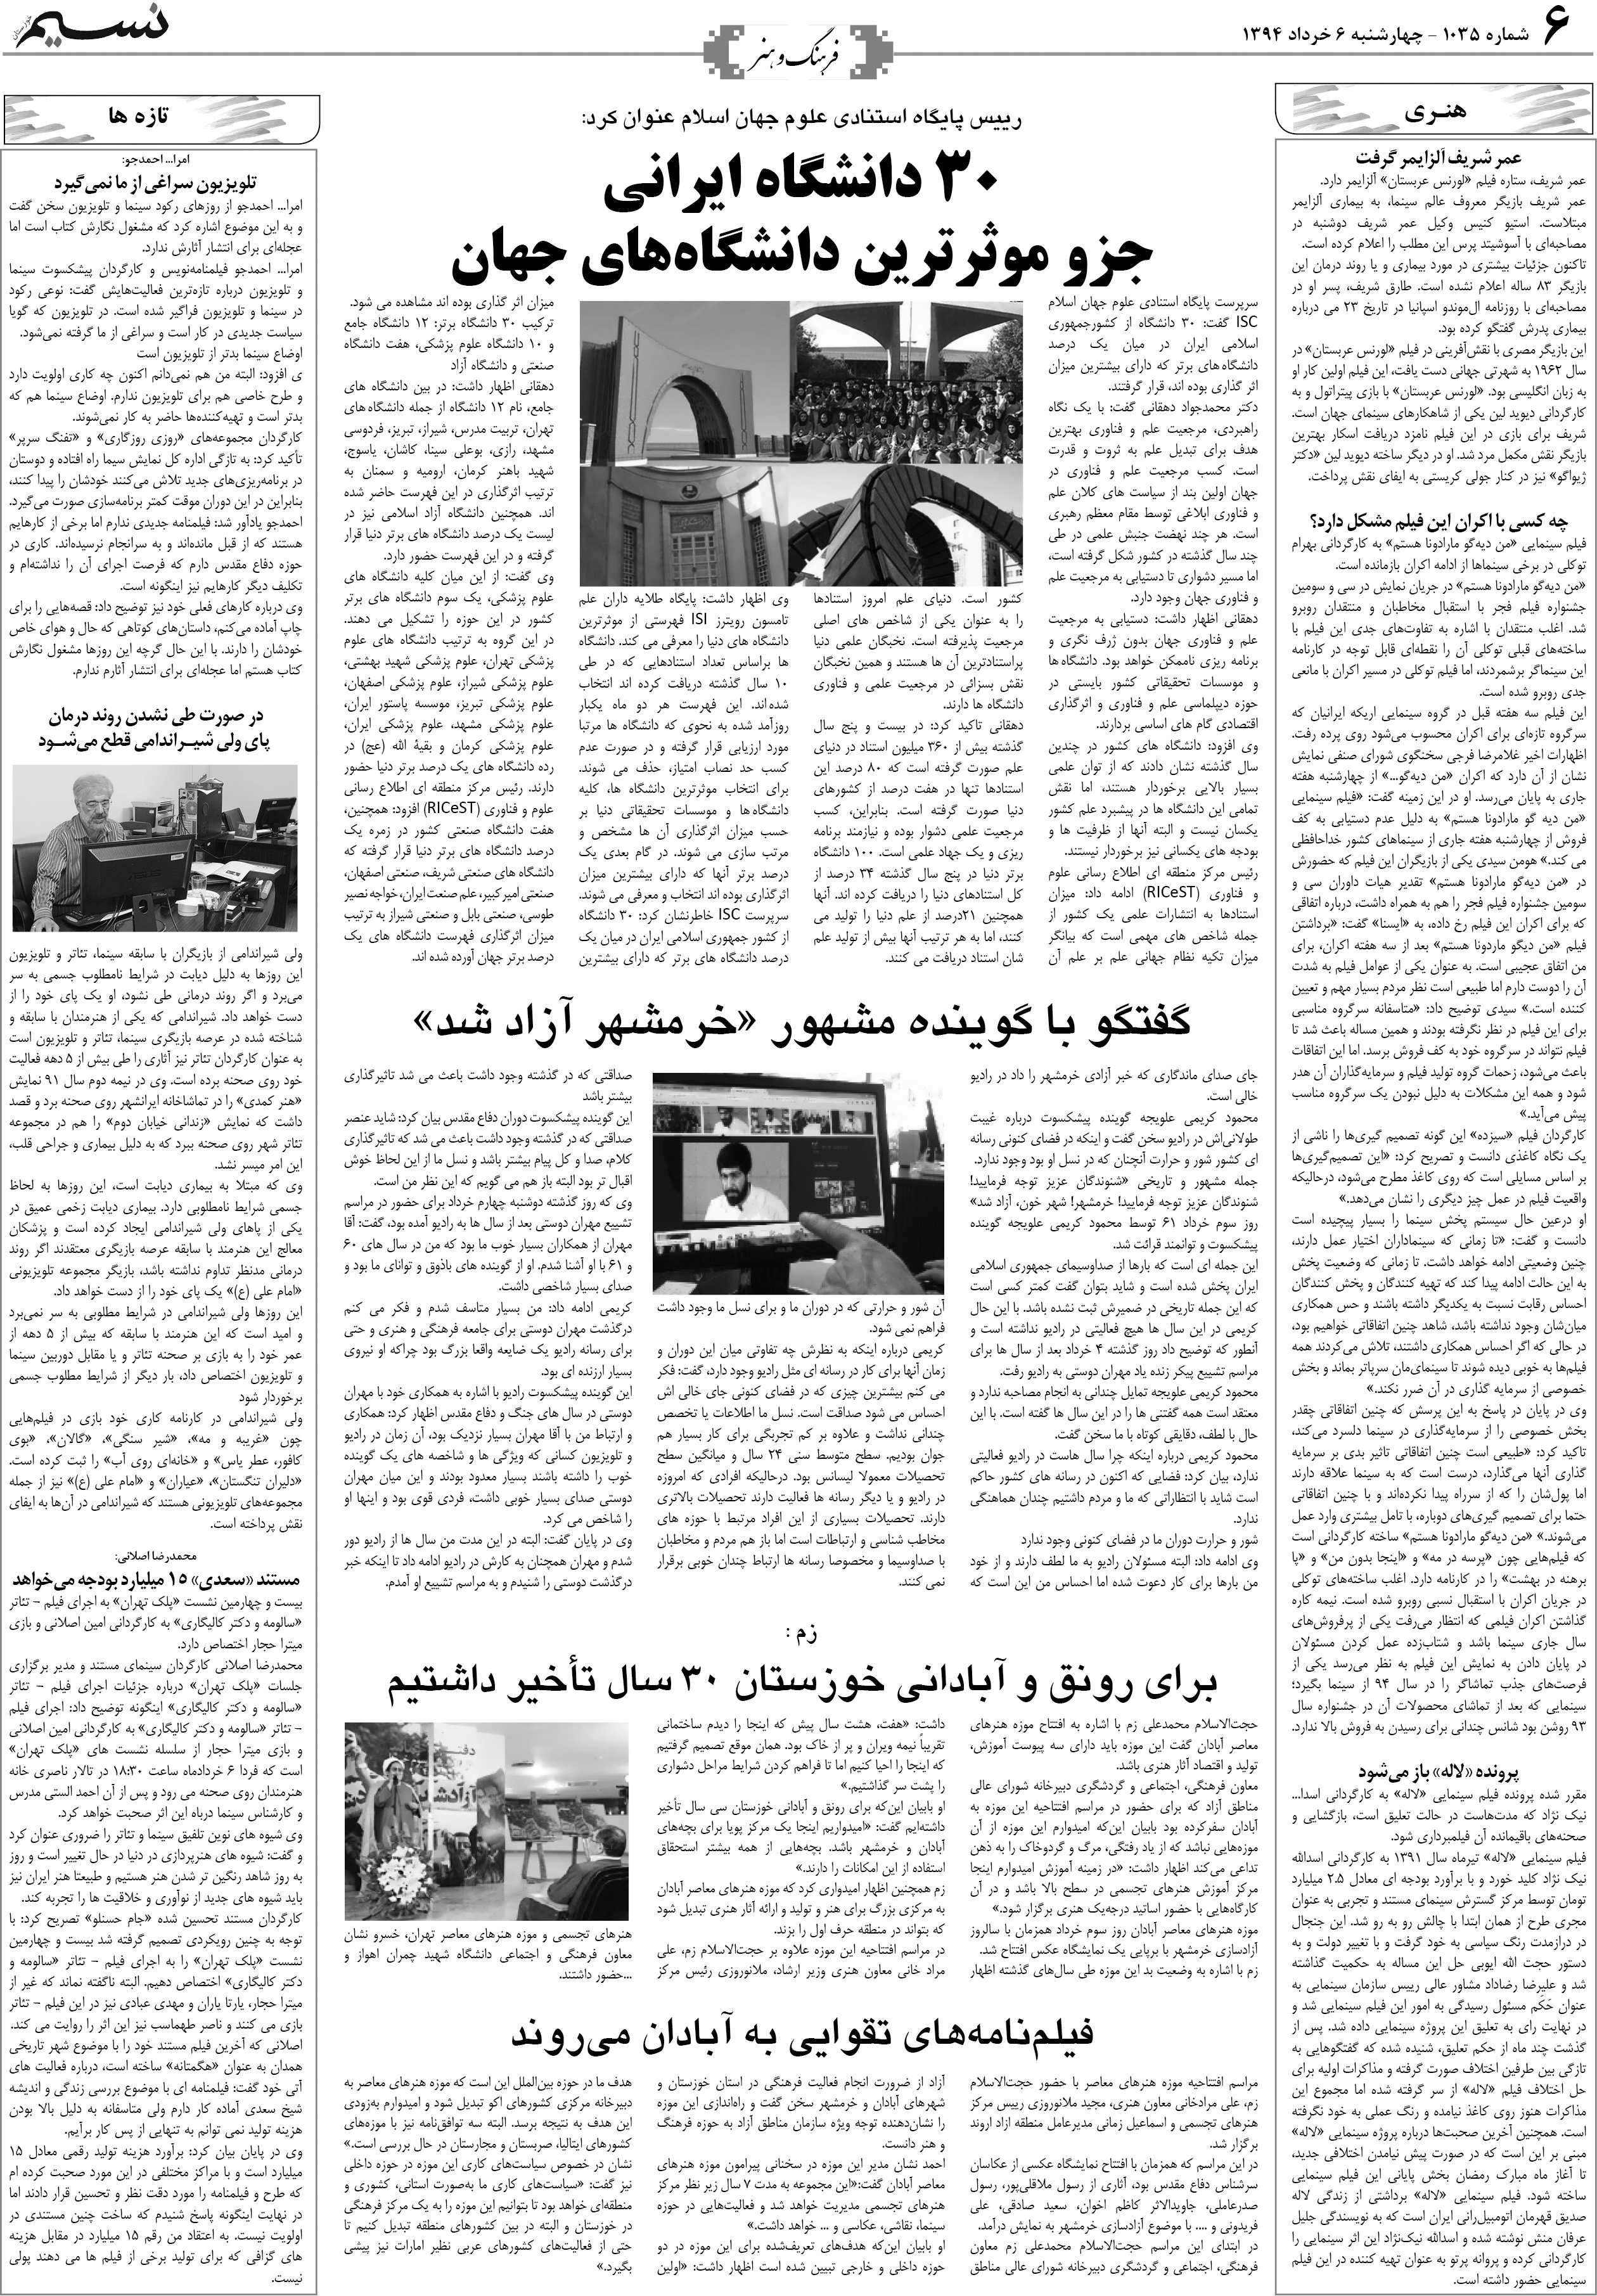 صفحه فرهنگ و هنر روزنامه نسیم شماره 1035